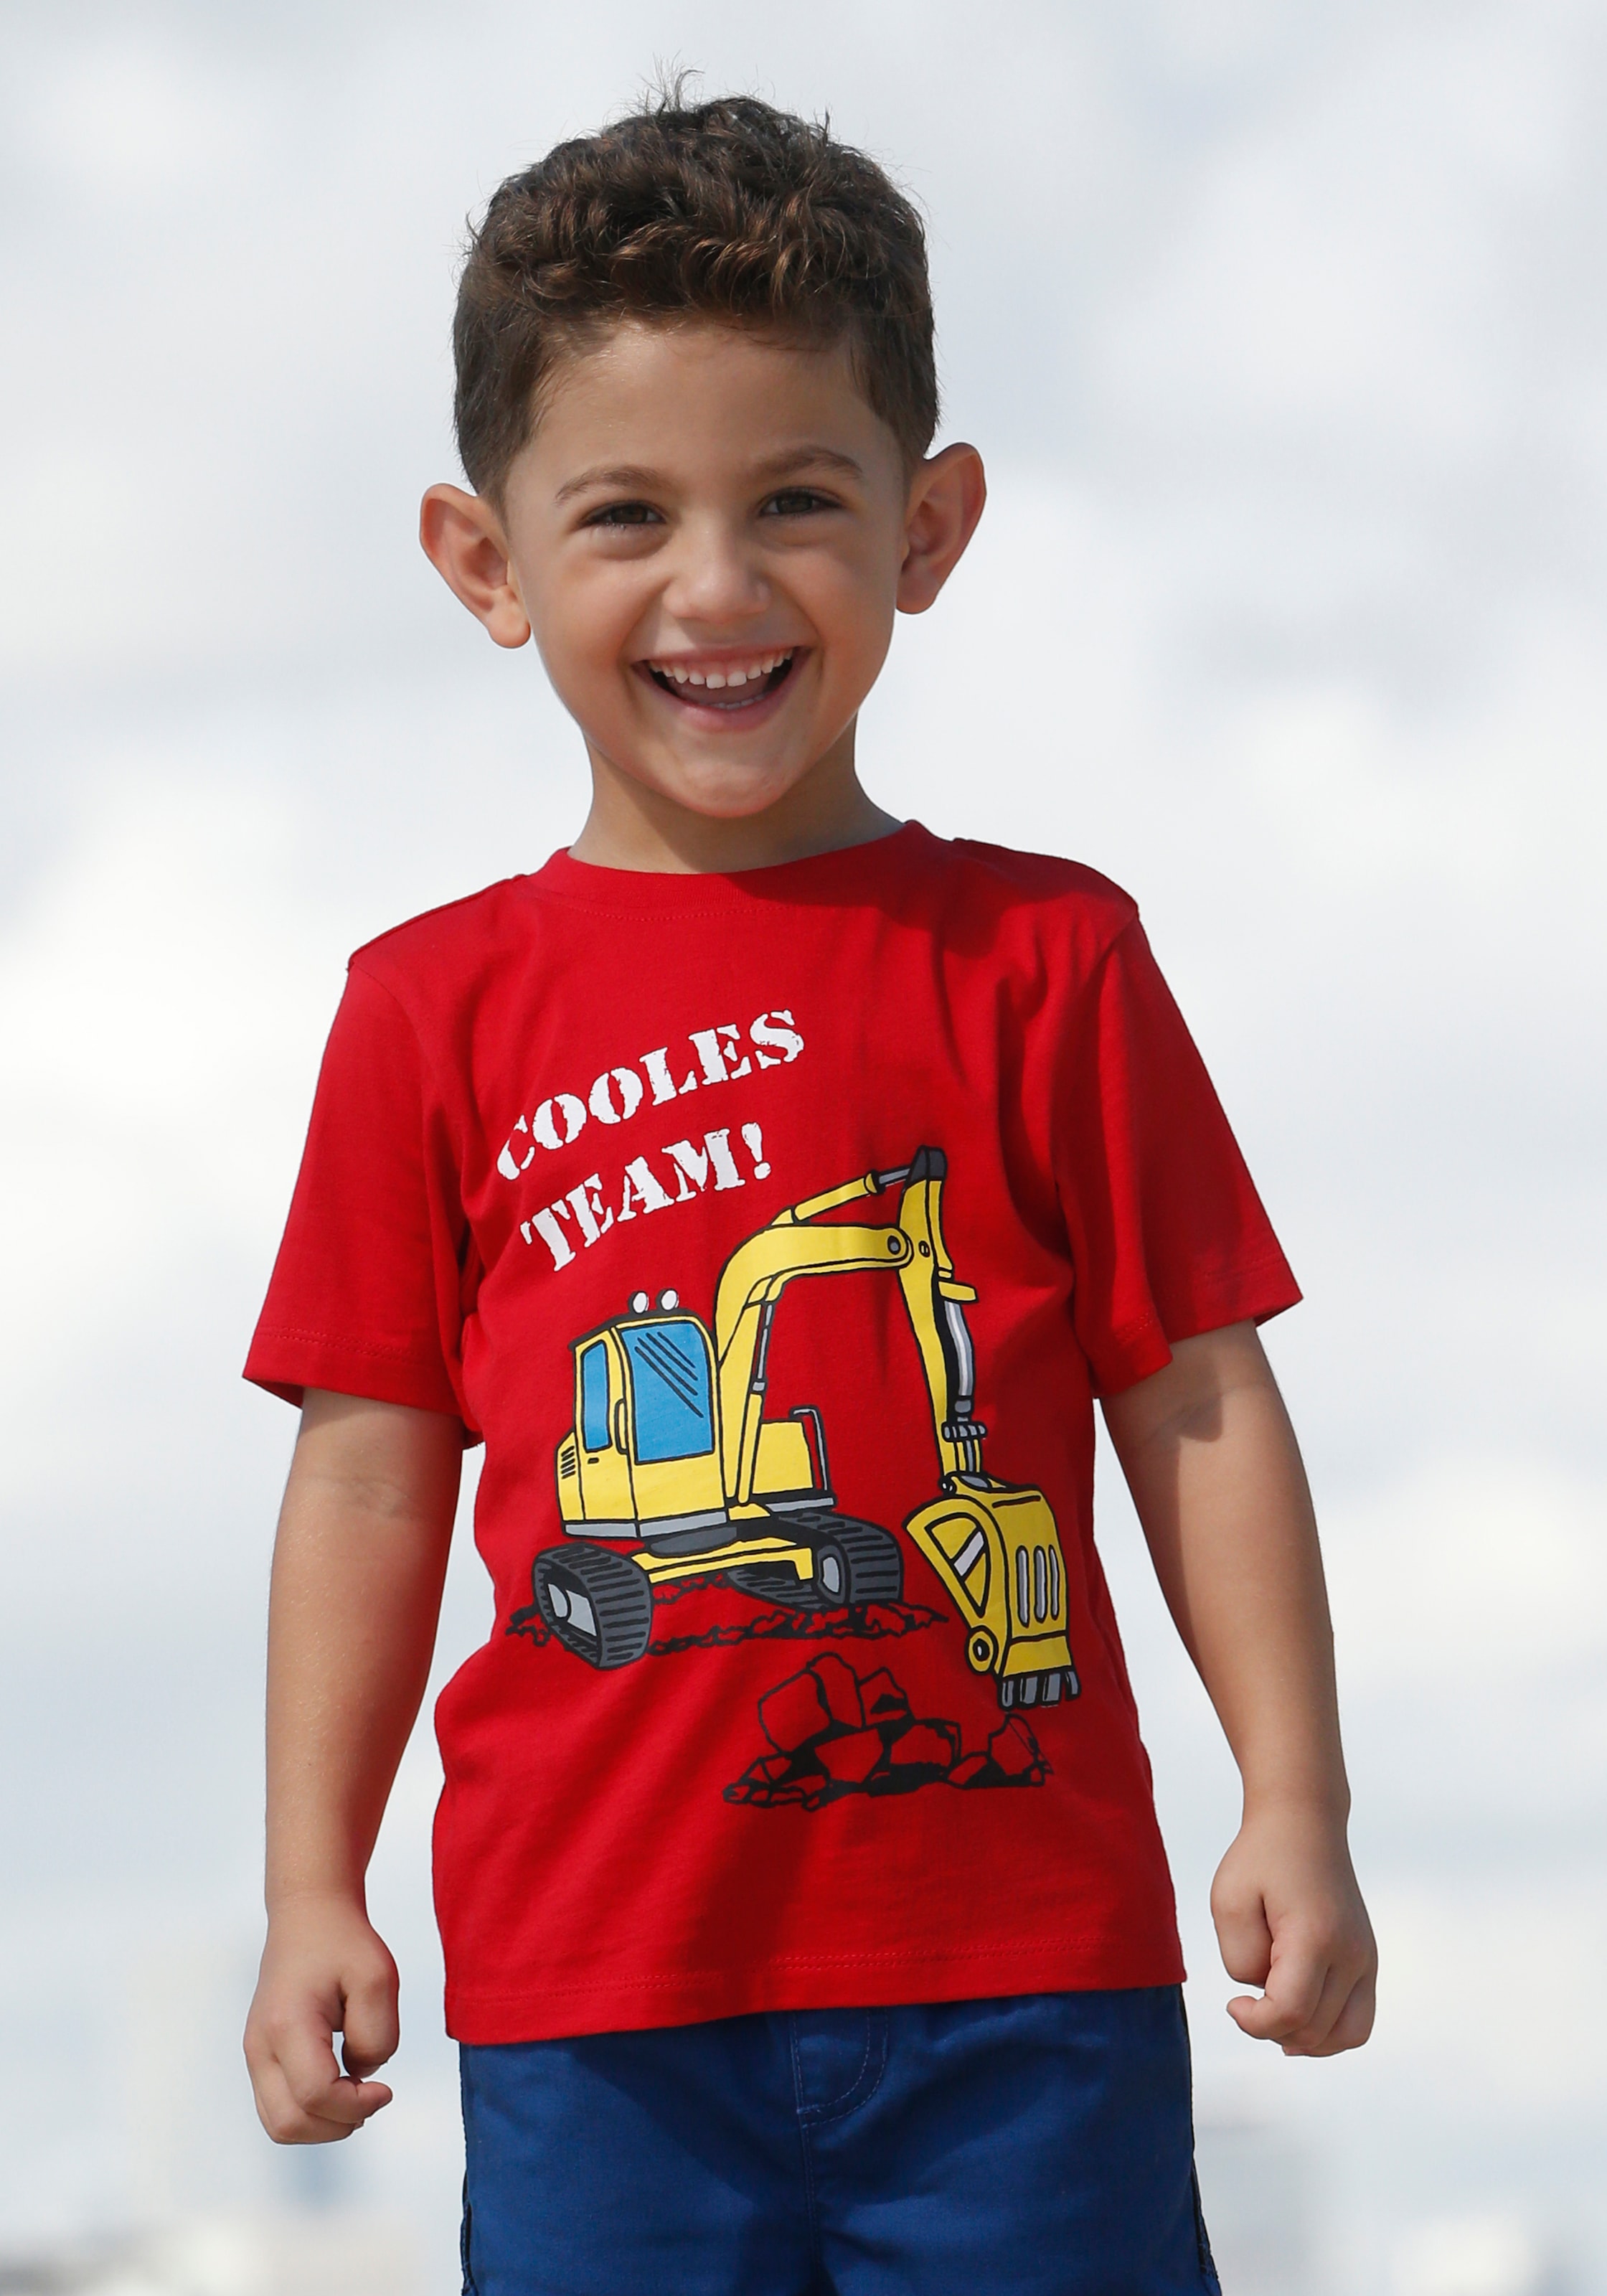 »COOLES KIDSWORLD TEAM« bestellen T-Shirt online